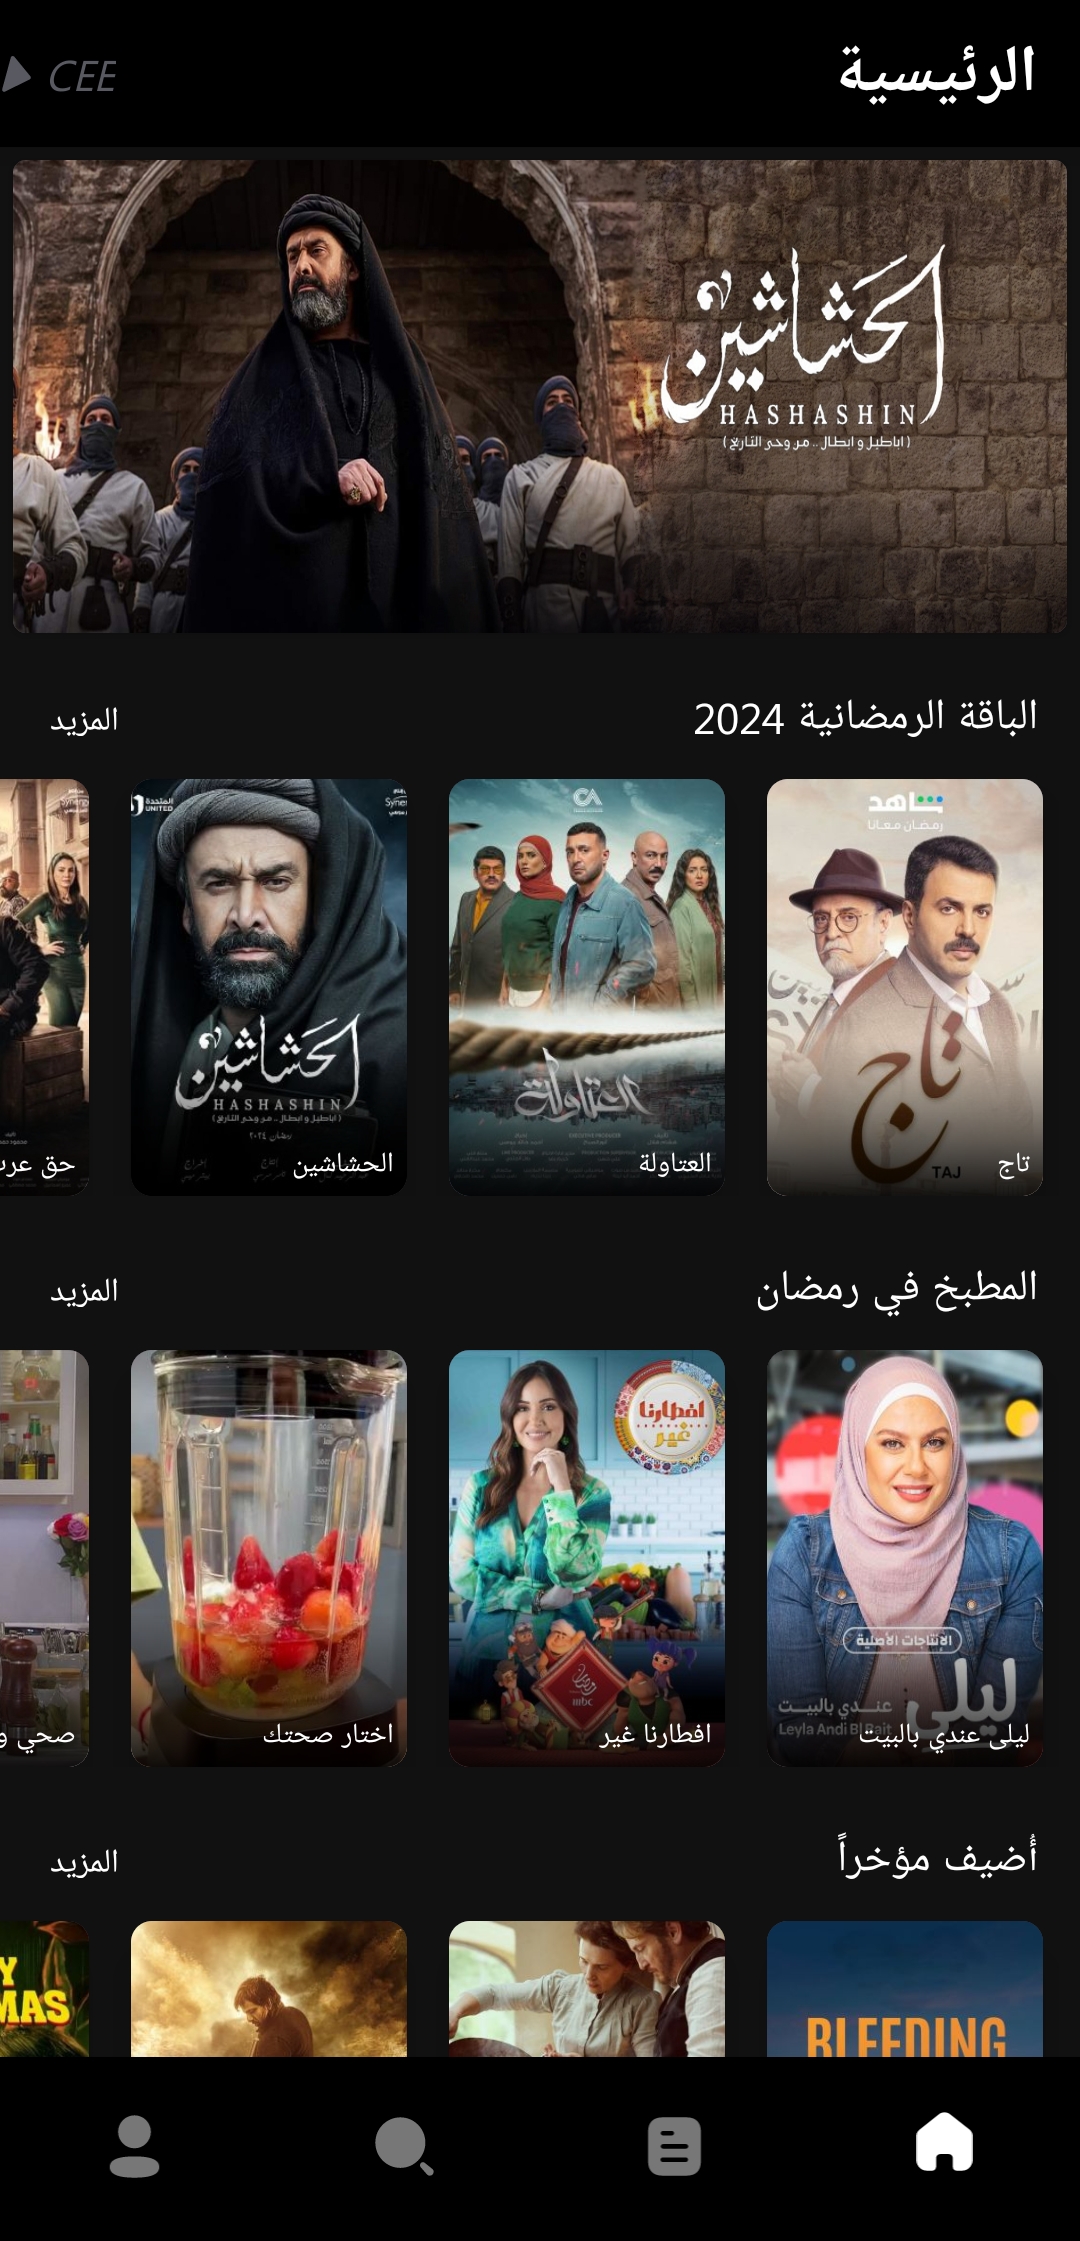 تحميل تطبيق Cee Apk للمسلسلات ومشاهدة مسلسلات رمضان 2024 للاندرويد والايفون اخر اصدار مجانا